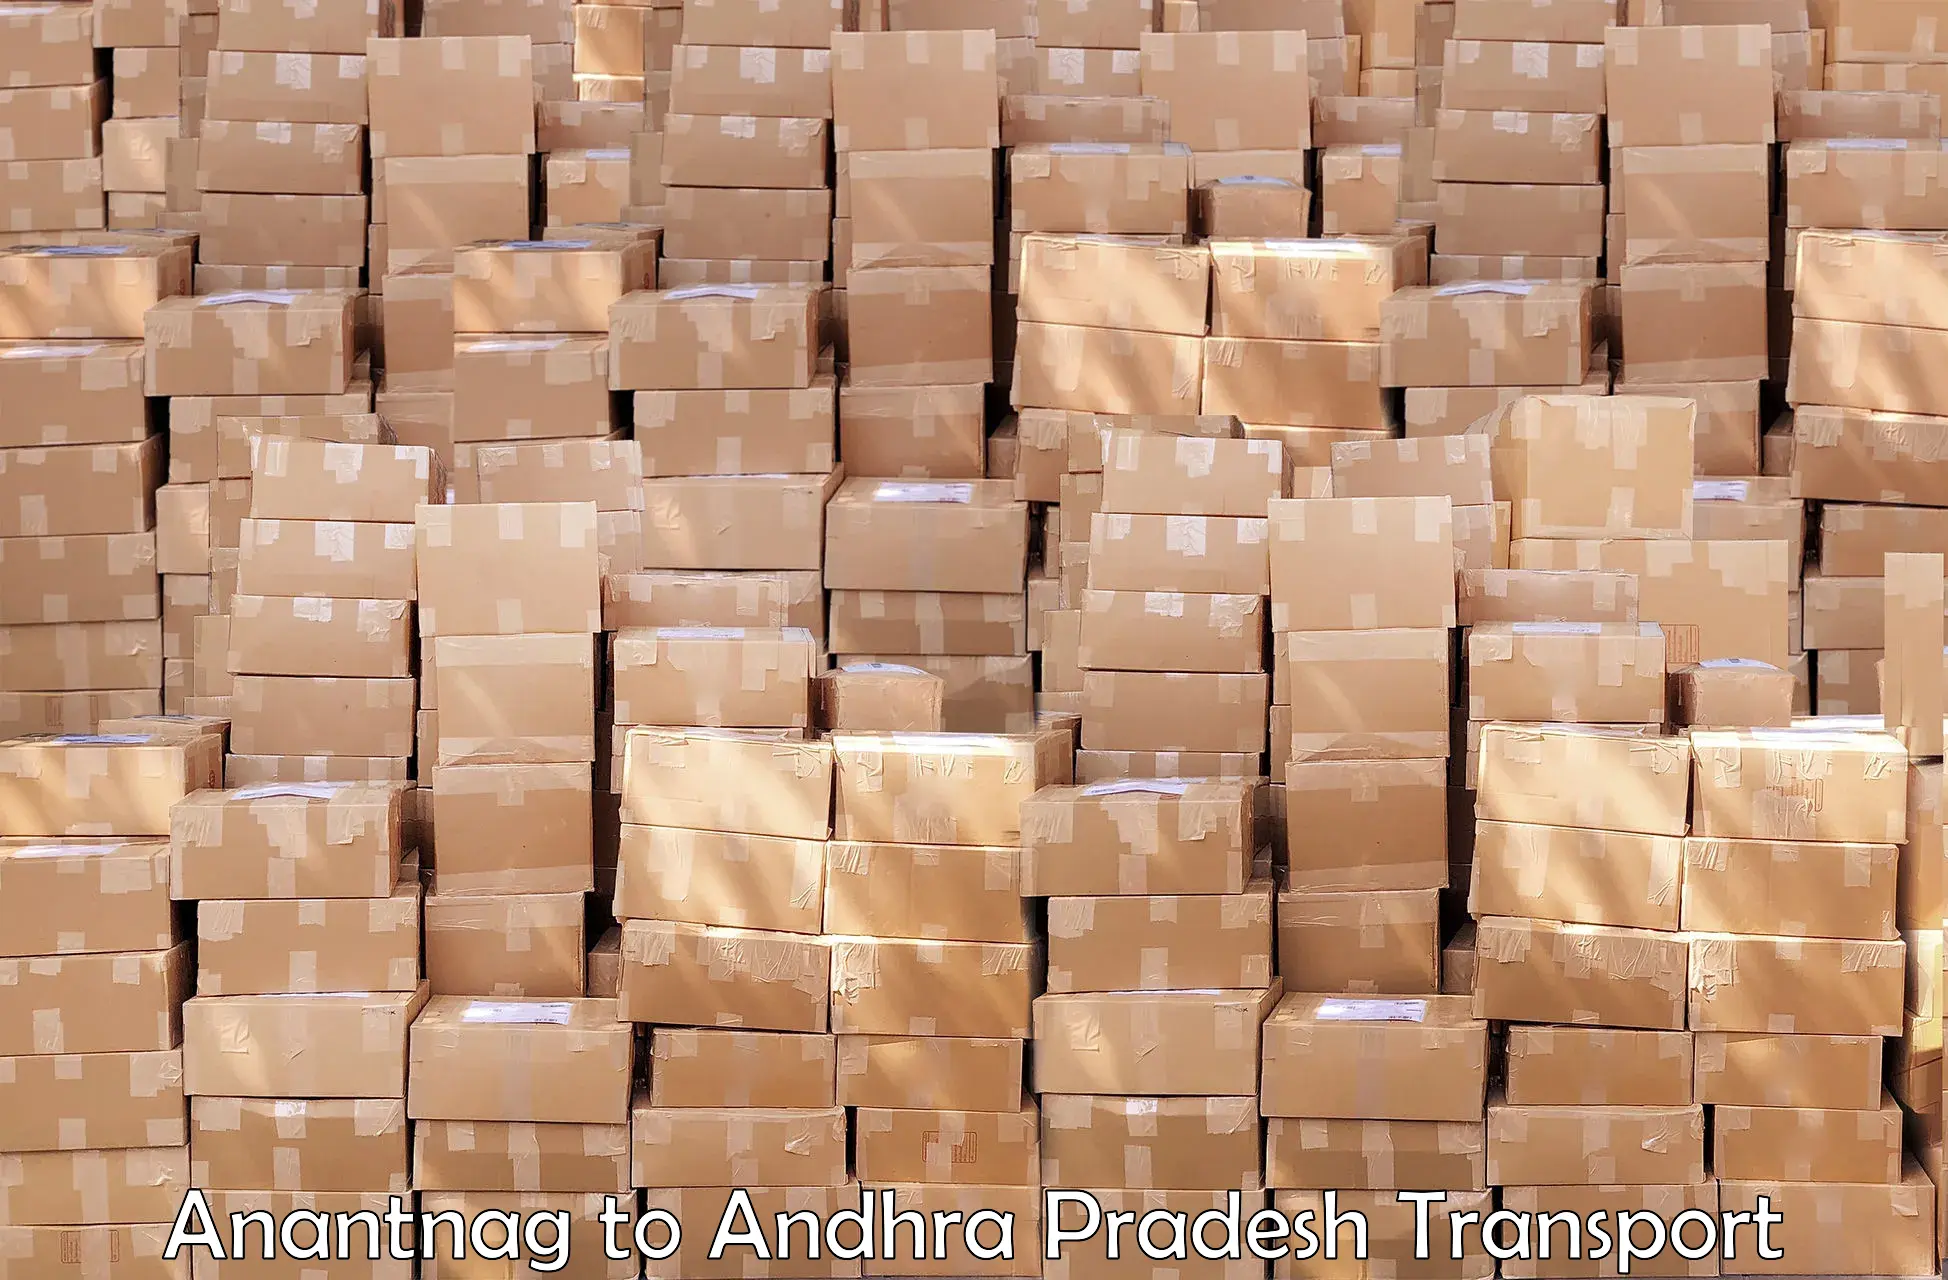 Goods delivery service Anantnag to Tadepalligudem